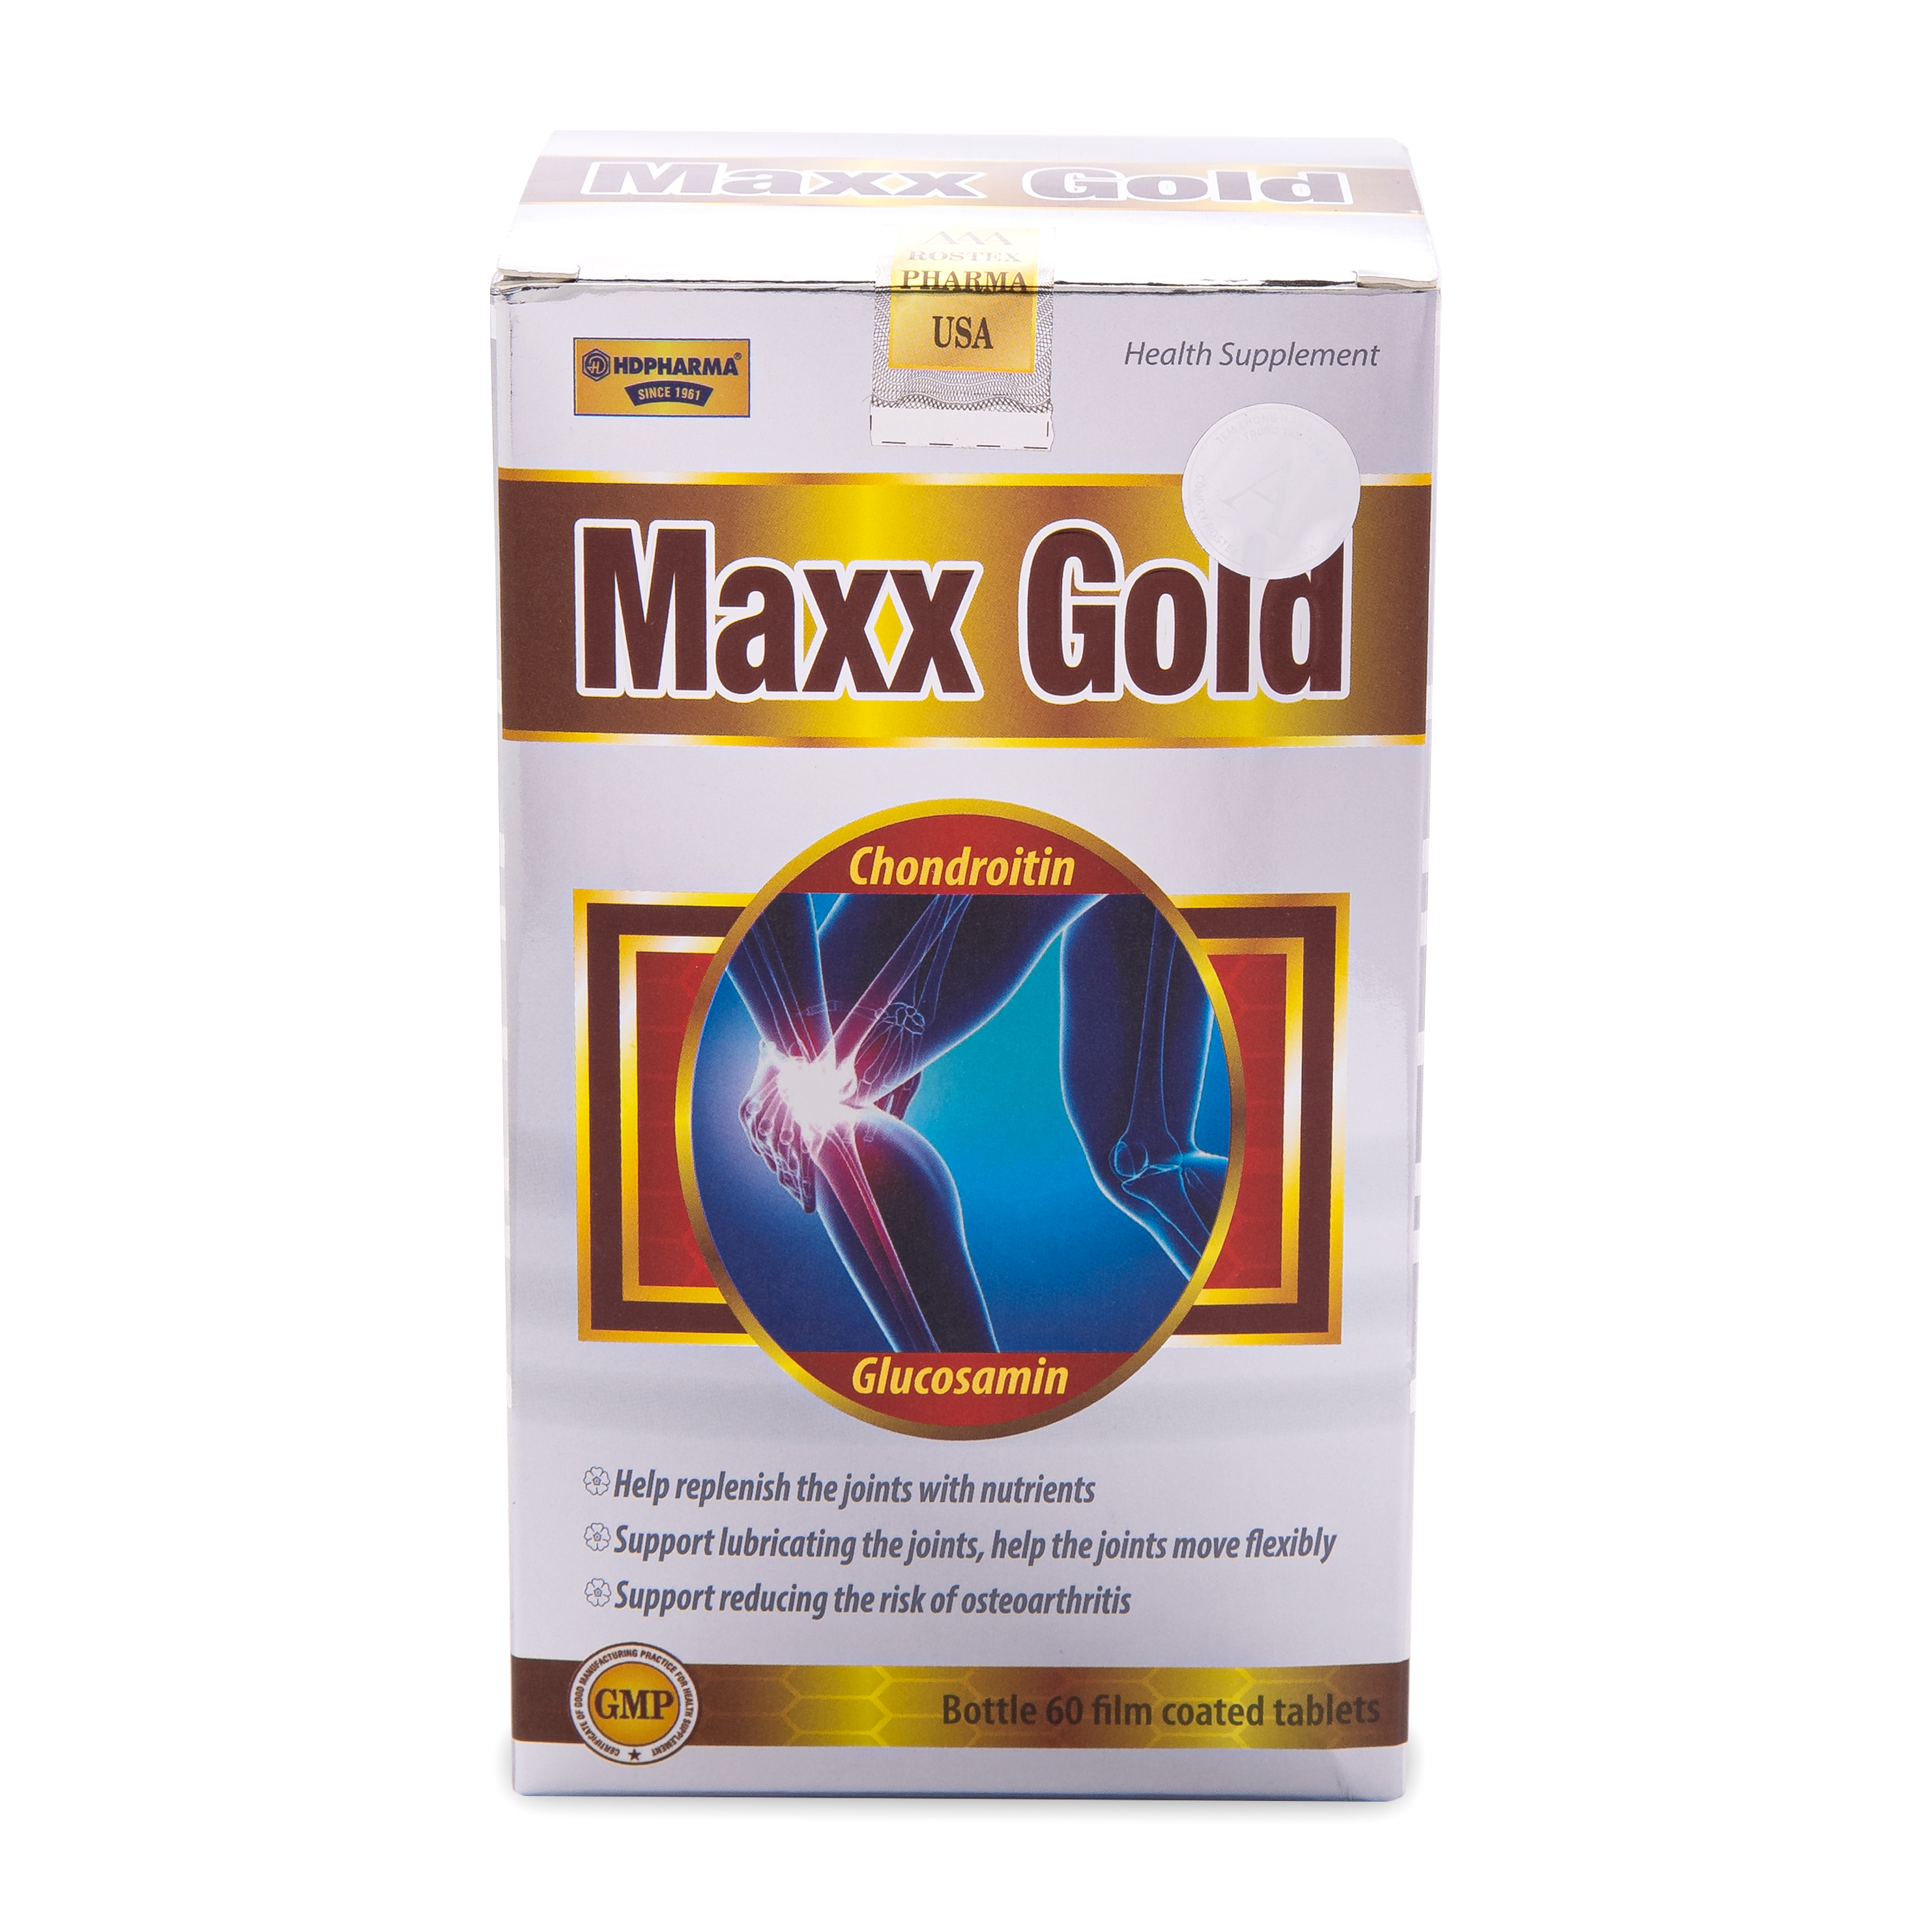 Viên Xương Khớp Maxx Gold Glucosamin giảm đau nhức xương khớp - Hộp vàng 60 viên